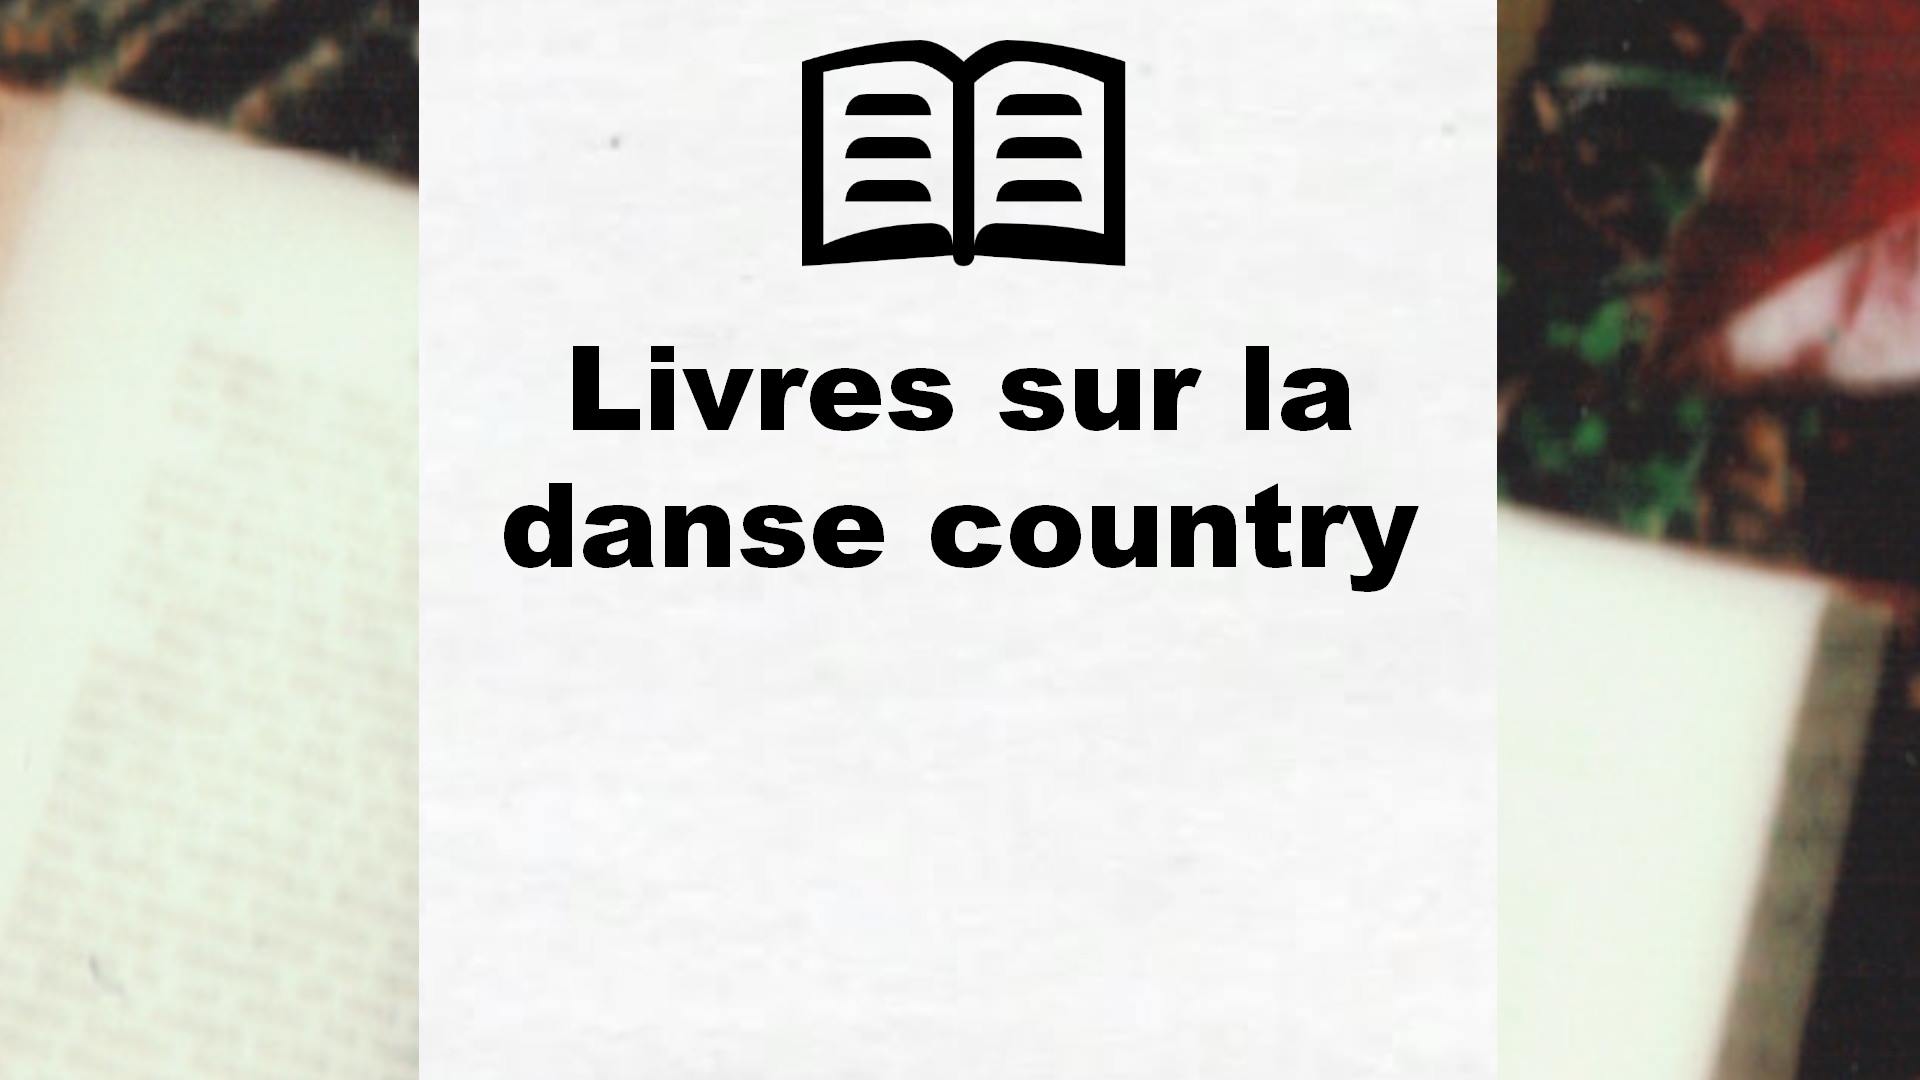 Livres sur la danse country